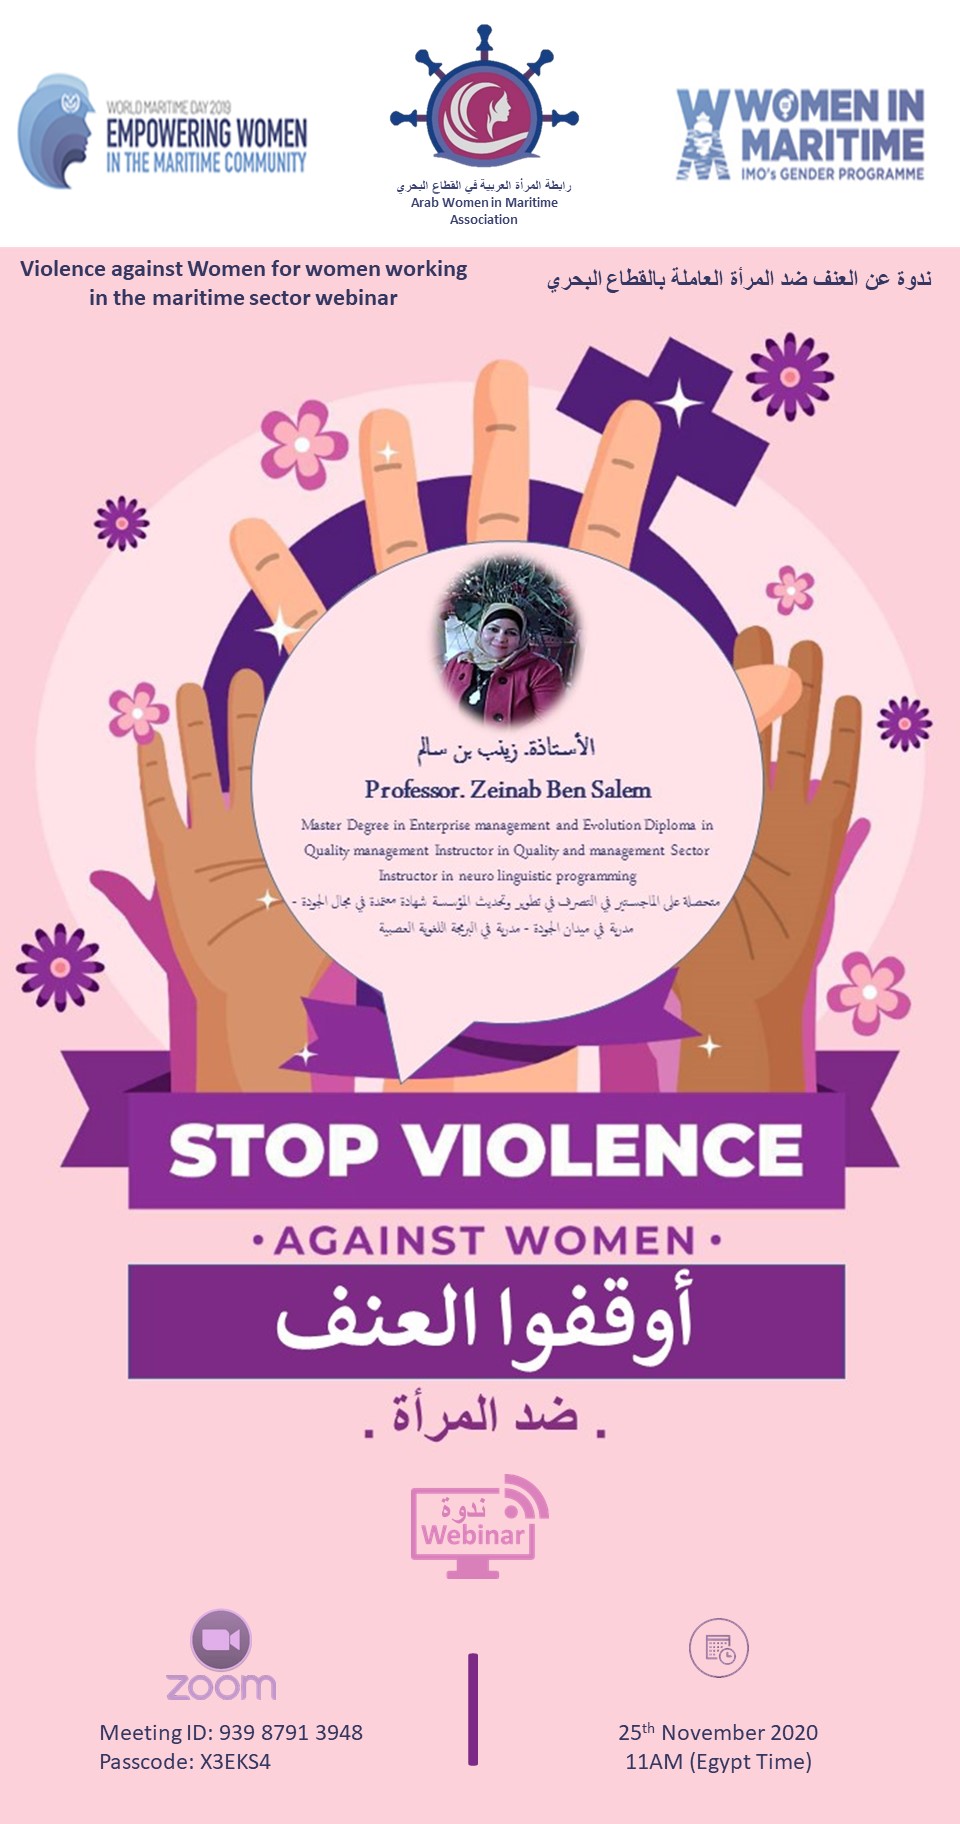  ندوة عن وقف العنف ضد المرأة للمرأة العاملة بالقطاع البحري العربي